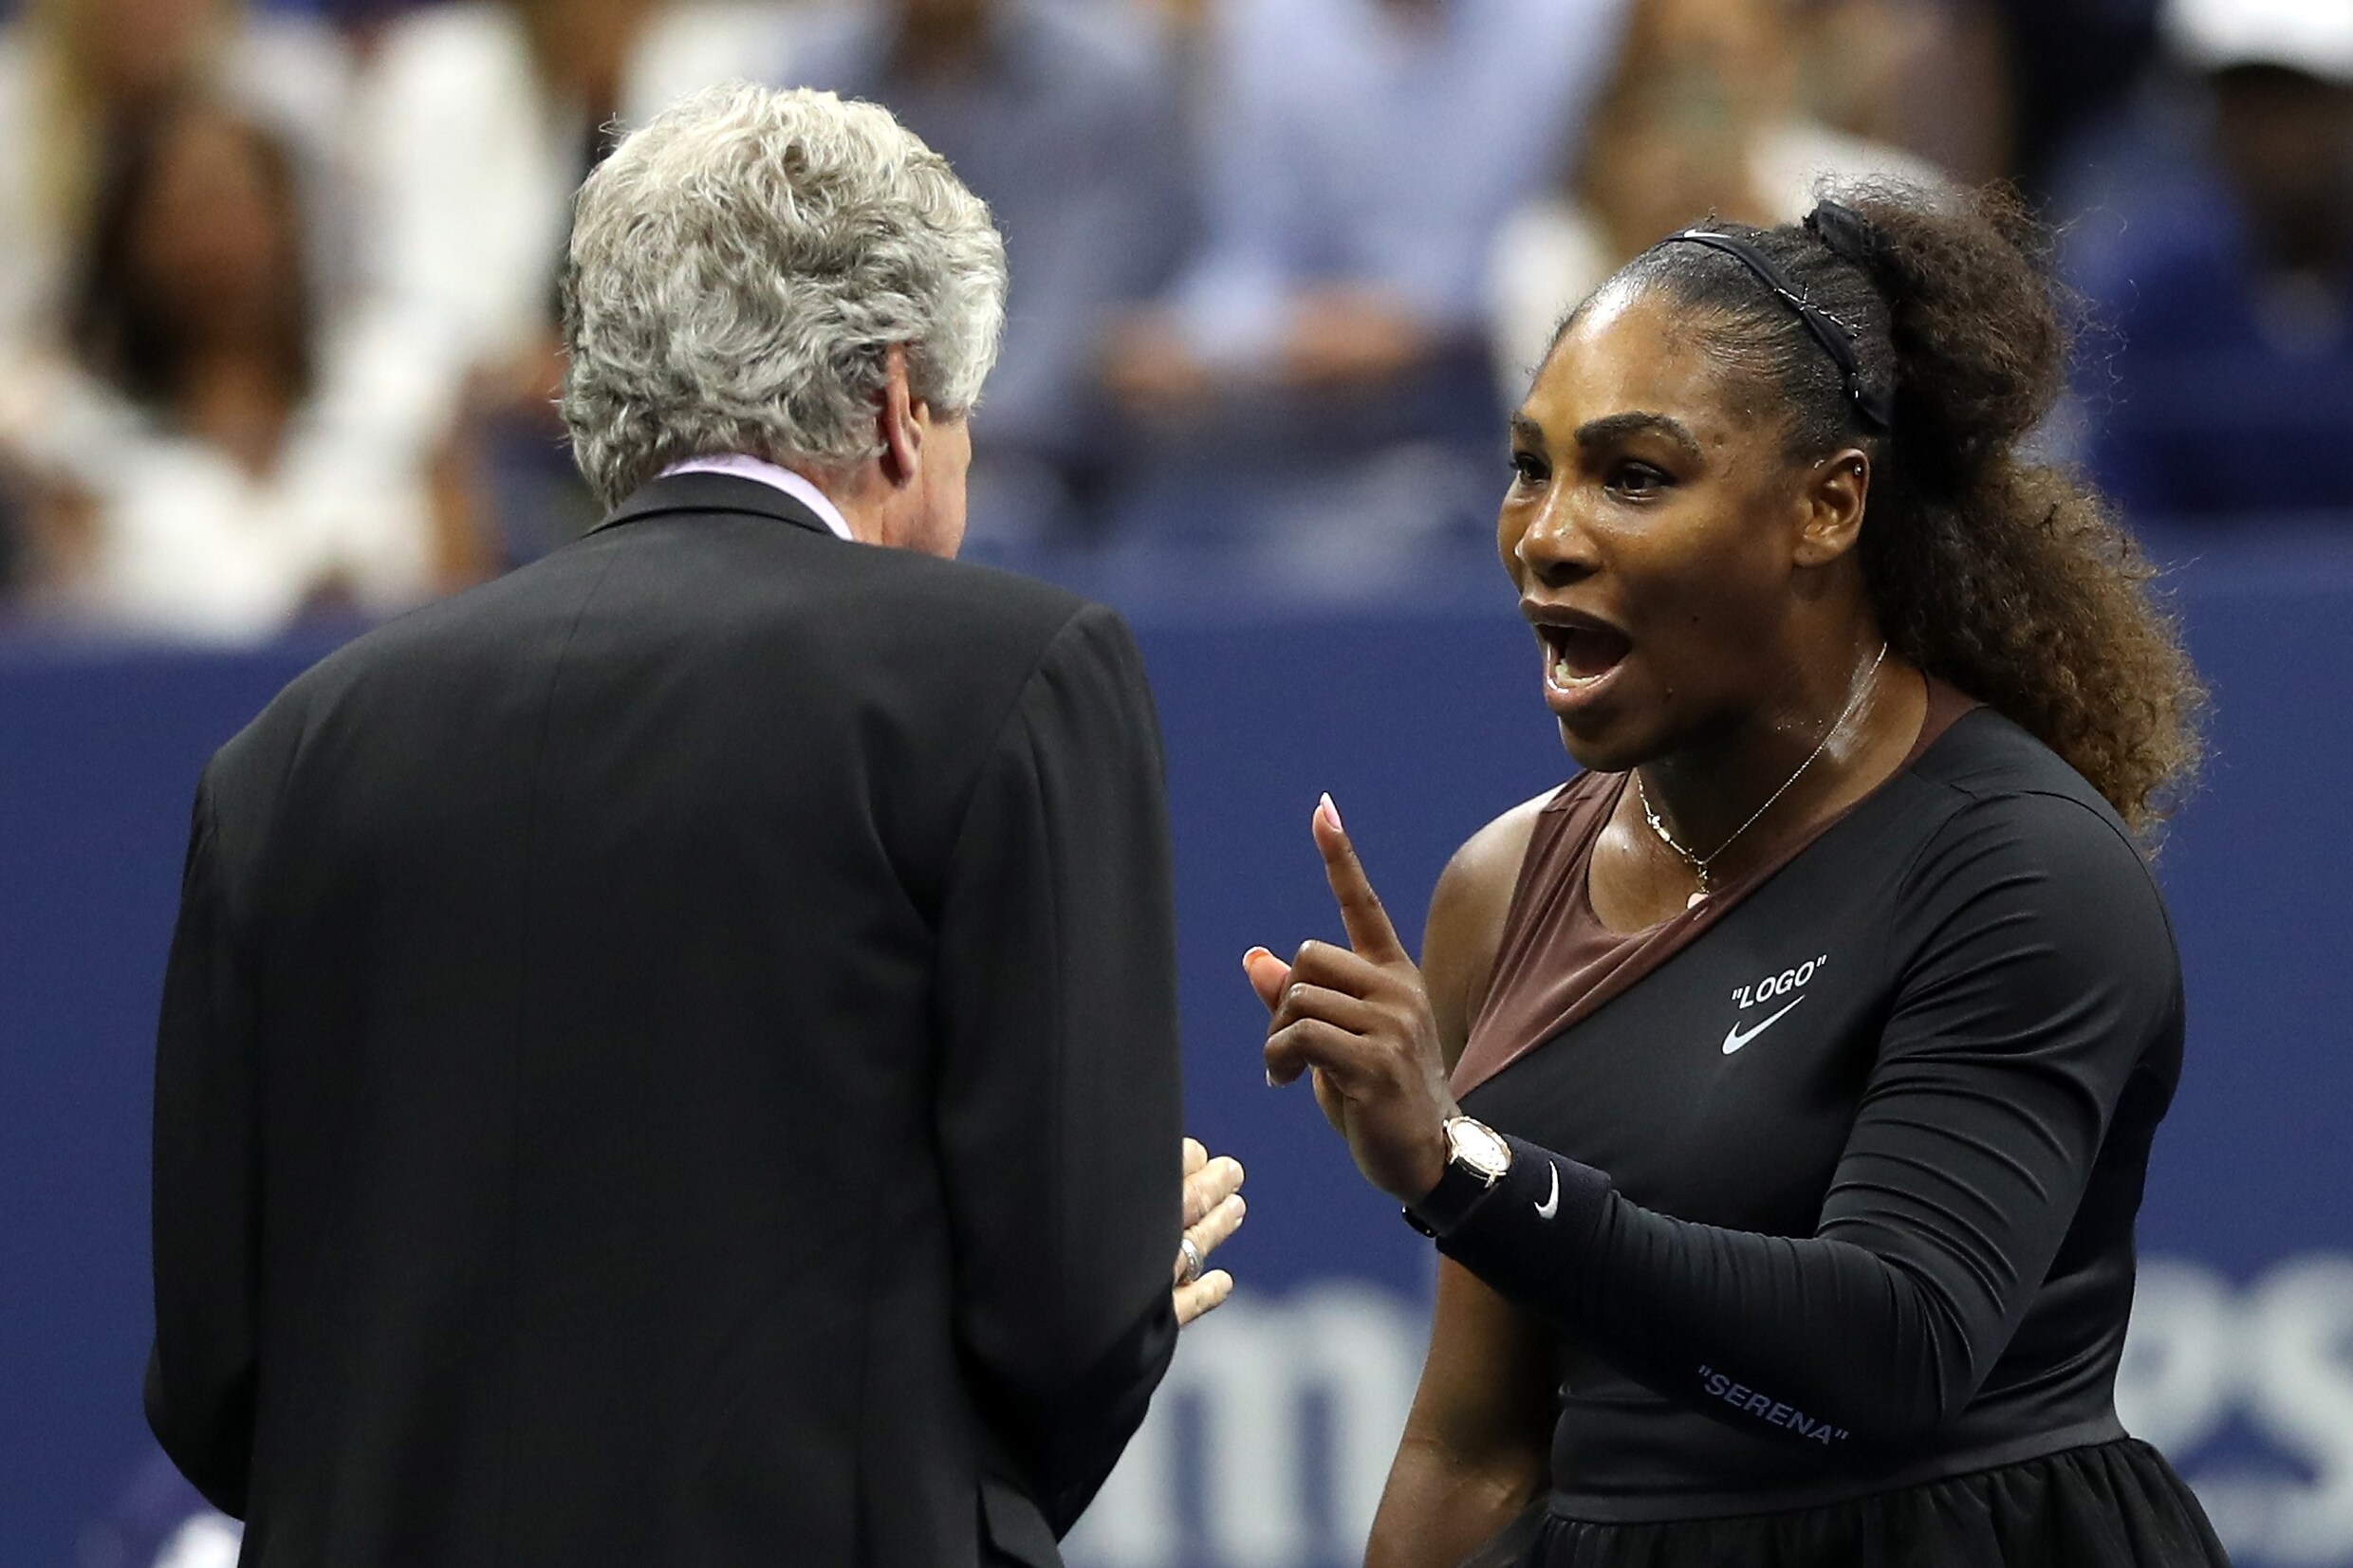 WTA steunt Serena Williams na rel in finale: "Mannen en vrouwen moeten gelijk behandeld worden"